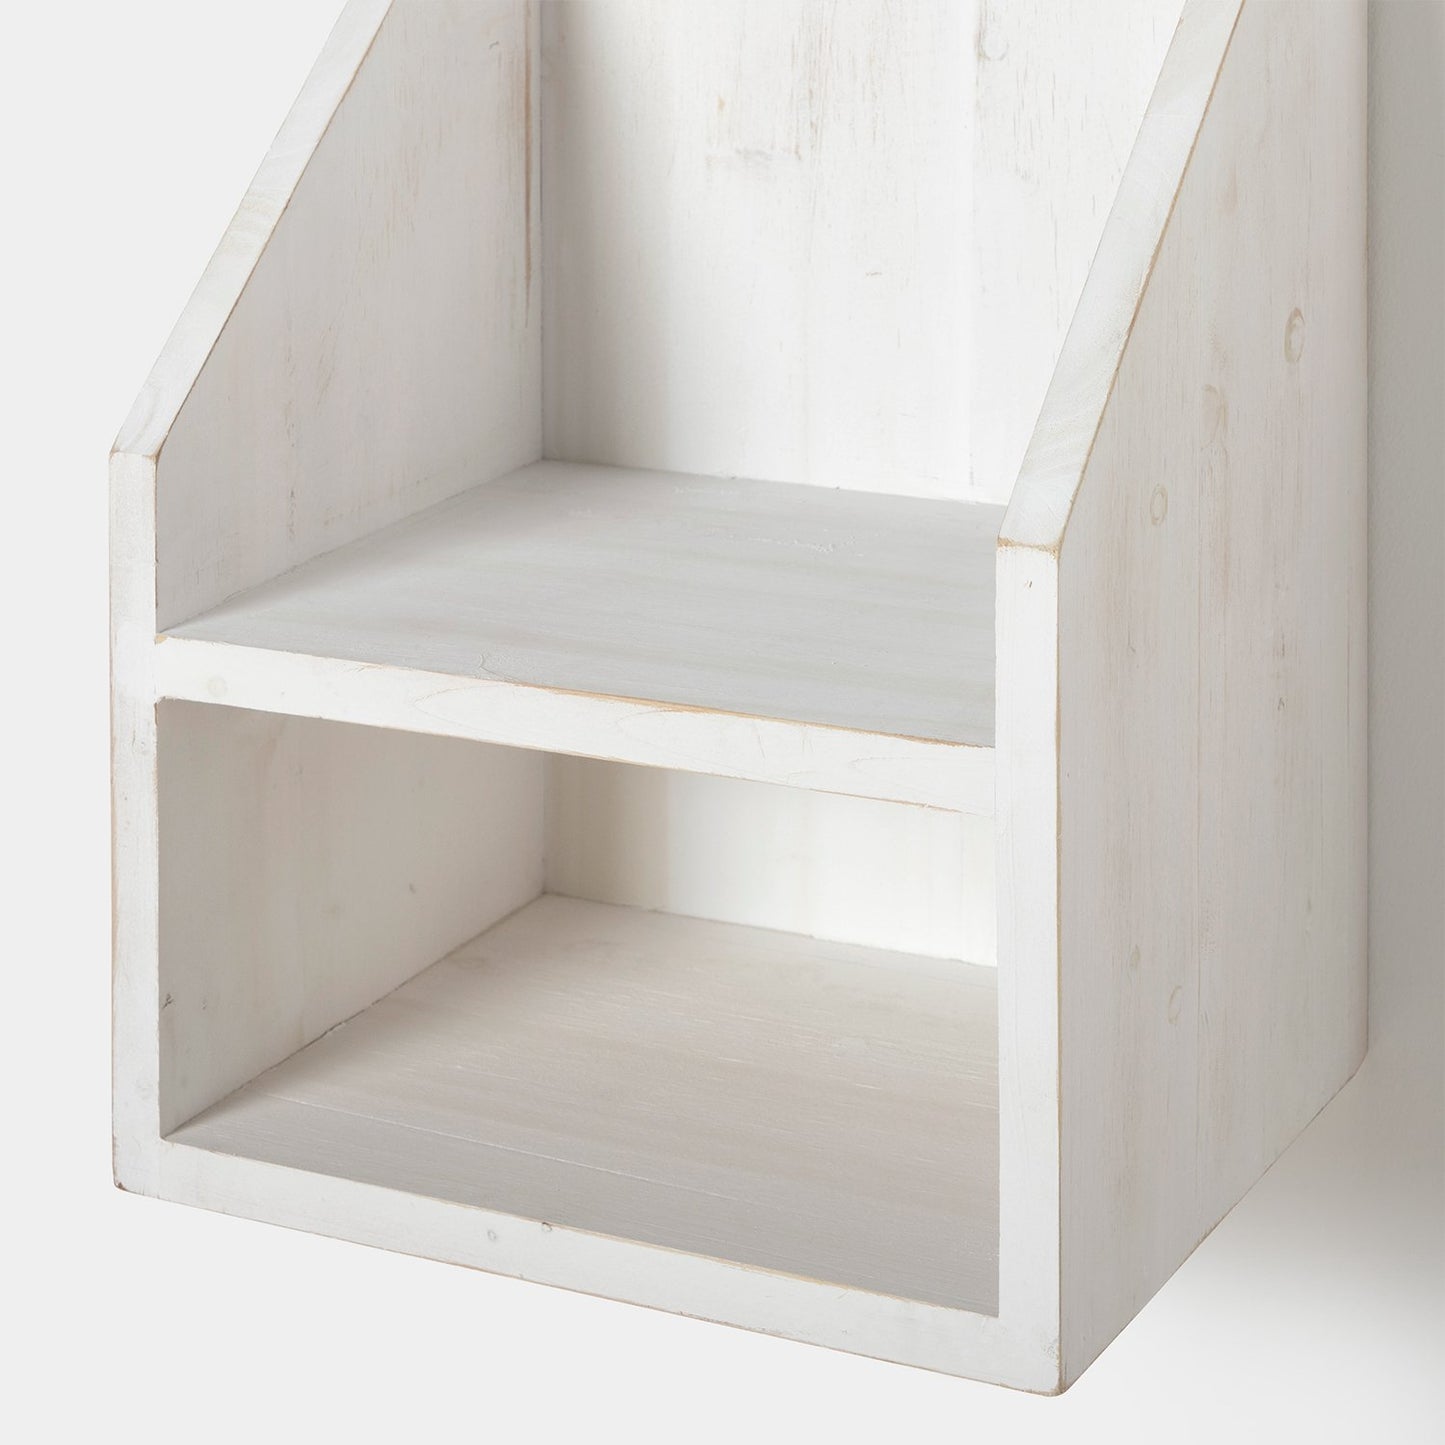 Mesita de noche flotante con estante en madera reciclada color blanco decapado Folk -  Klast